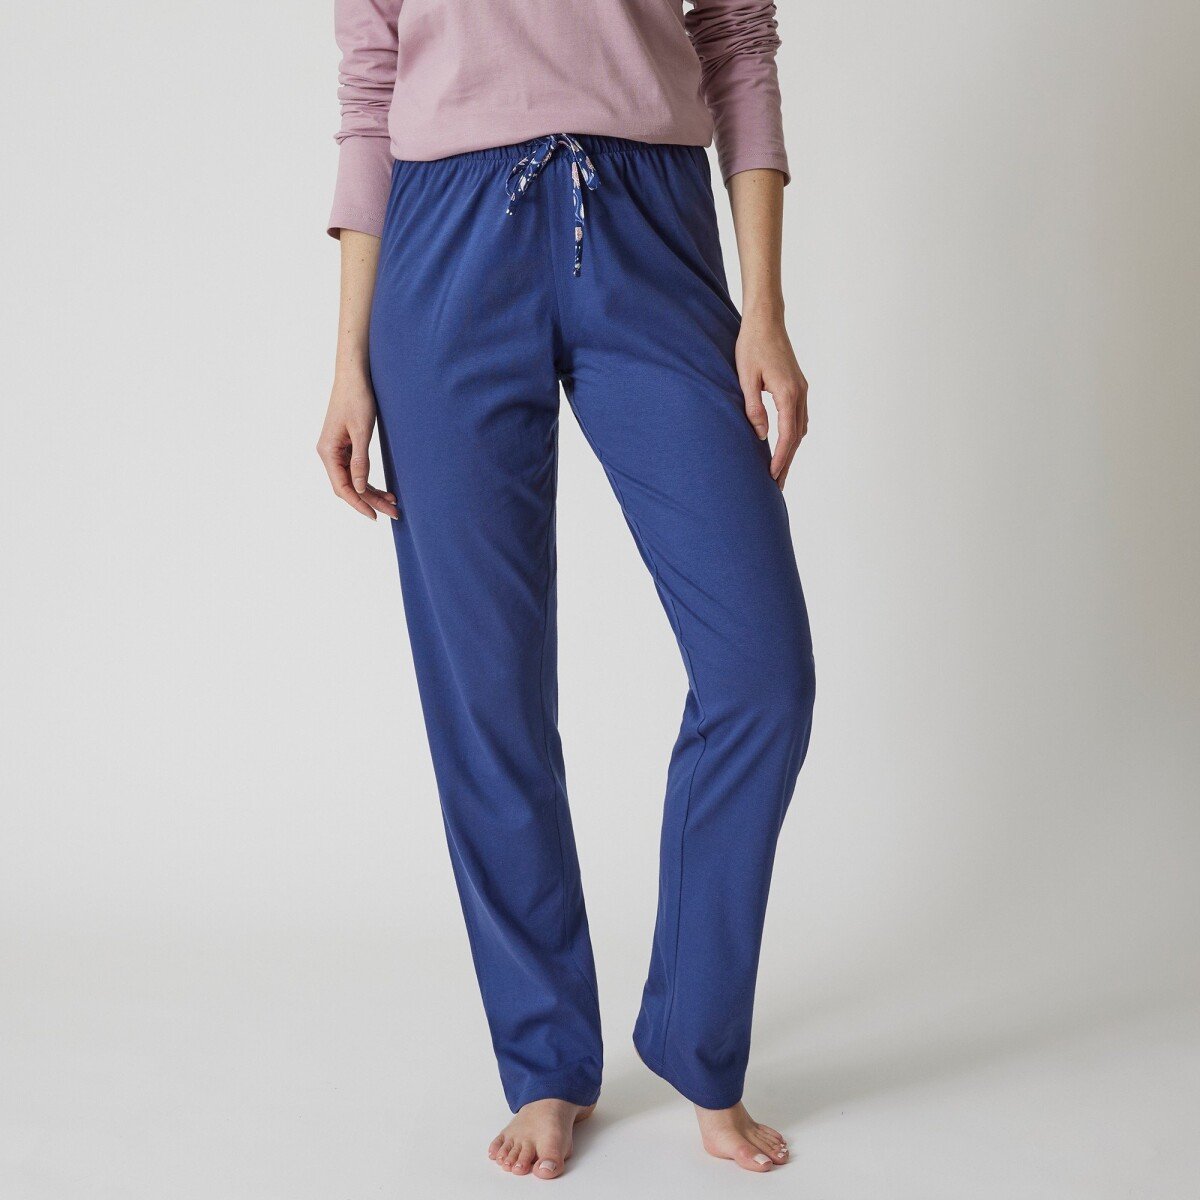 Blancheporte Jednobarevné pyžamové kalhoty s mašlí s potiskem květin nám. modrá 54